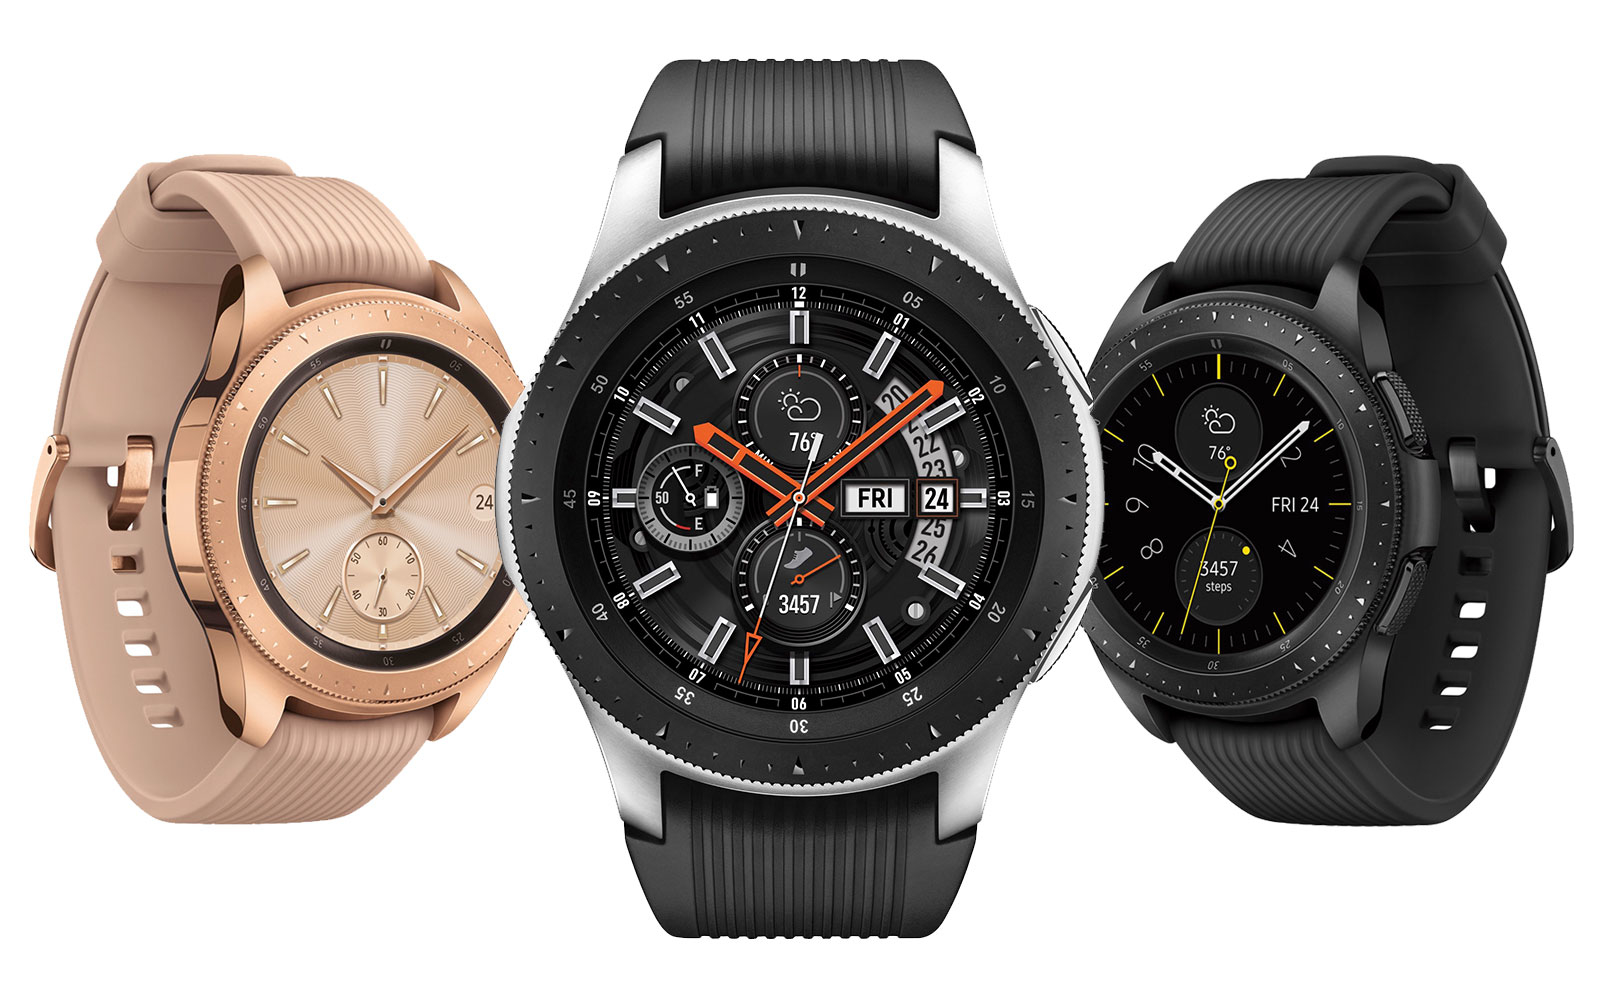 Samsung ra mắt đồng hồ thông minh Galaxy Watch hoàn toàn mới: pin 80 tiếng, kết nối LTE, 39 bài tập theo dõi sức khỏe